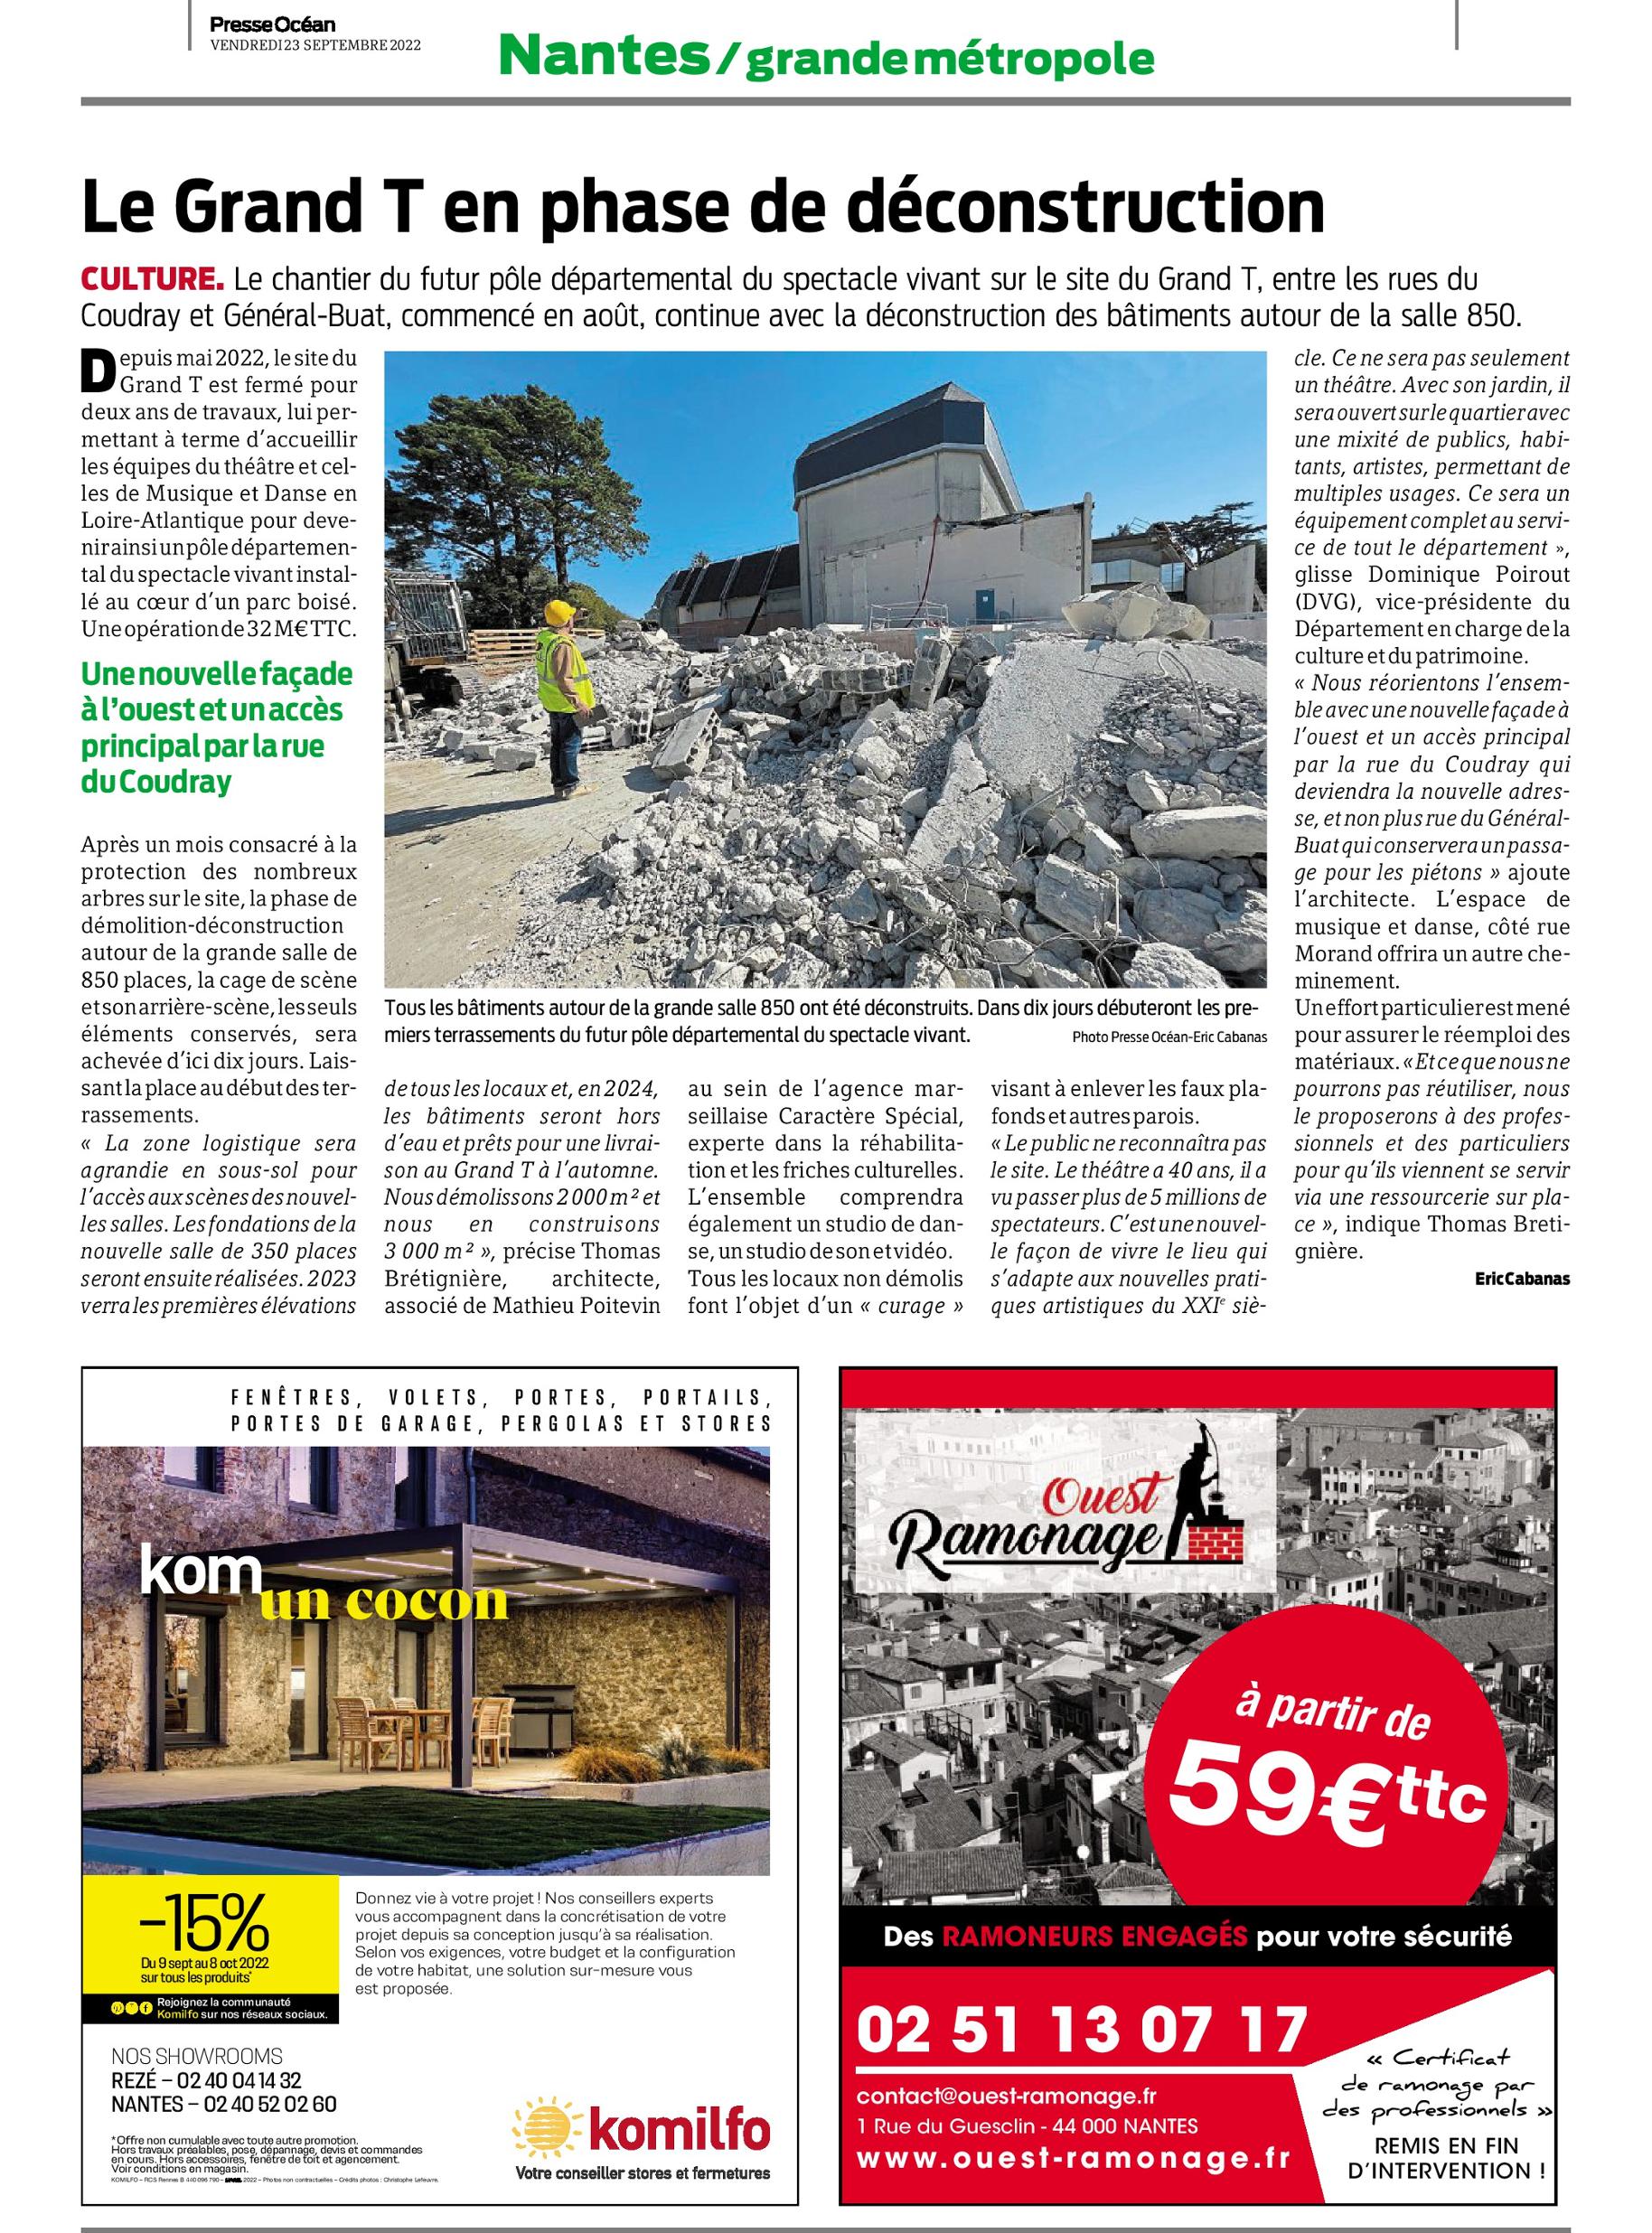 Presse Océan, chantier du Grand T, Nantes, Caractère Spécial, 23 septembre 2022